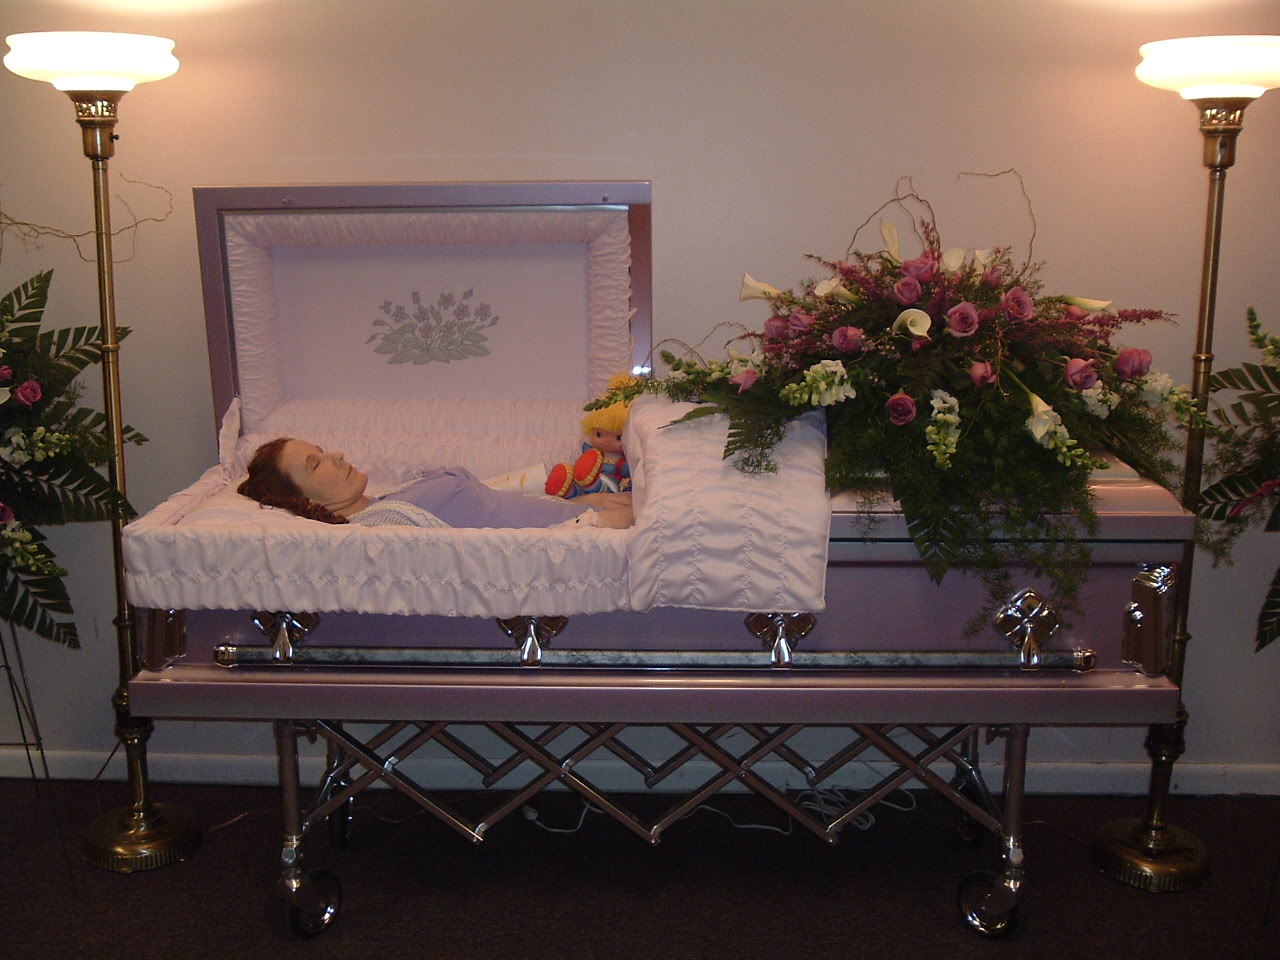 Berbi.Grl's Gore: Dead Girls In Coffin #62